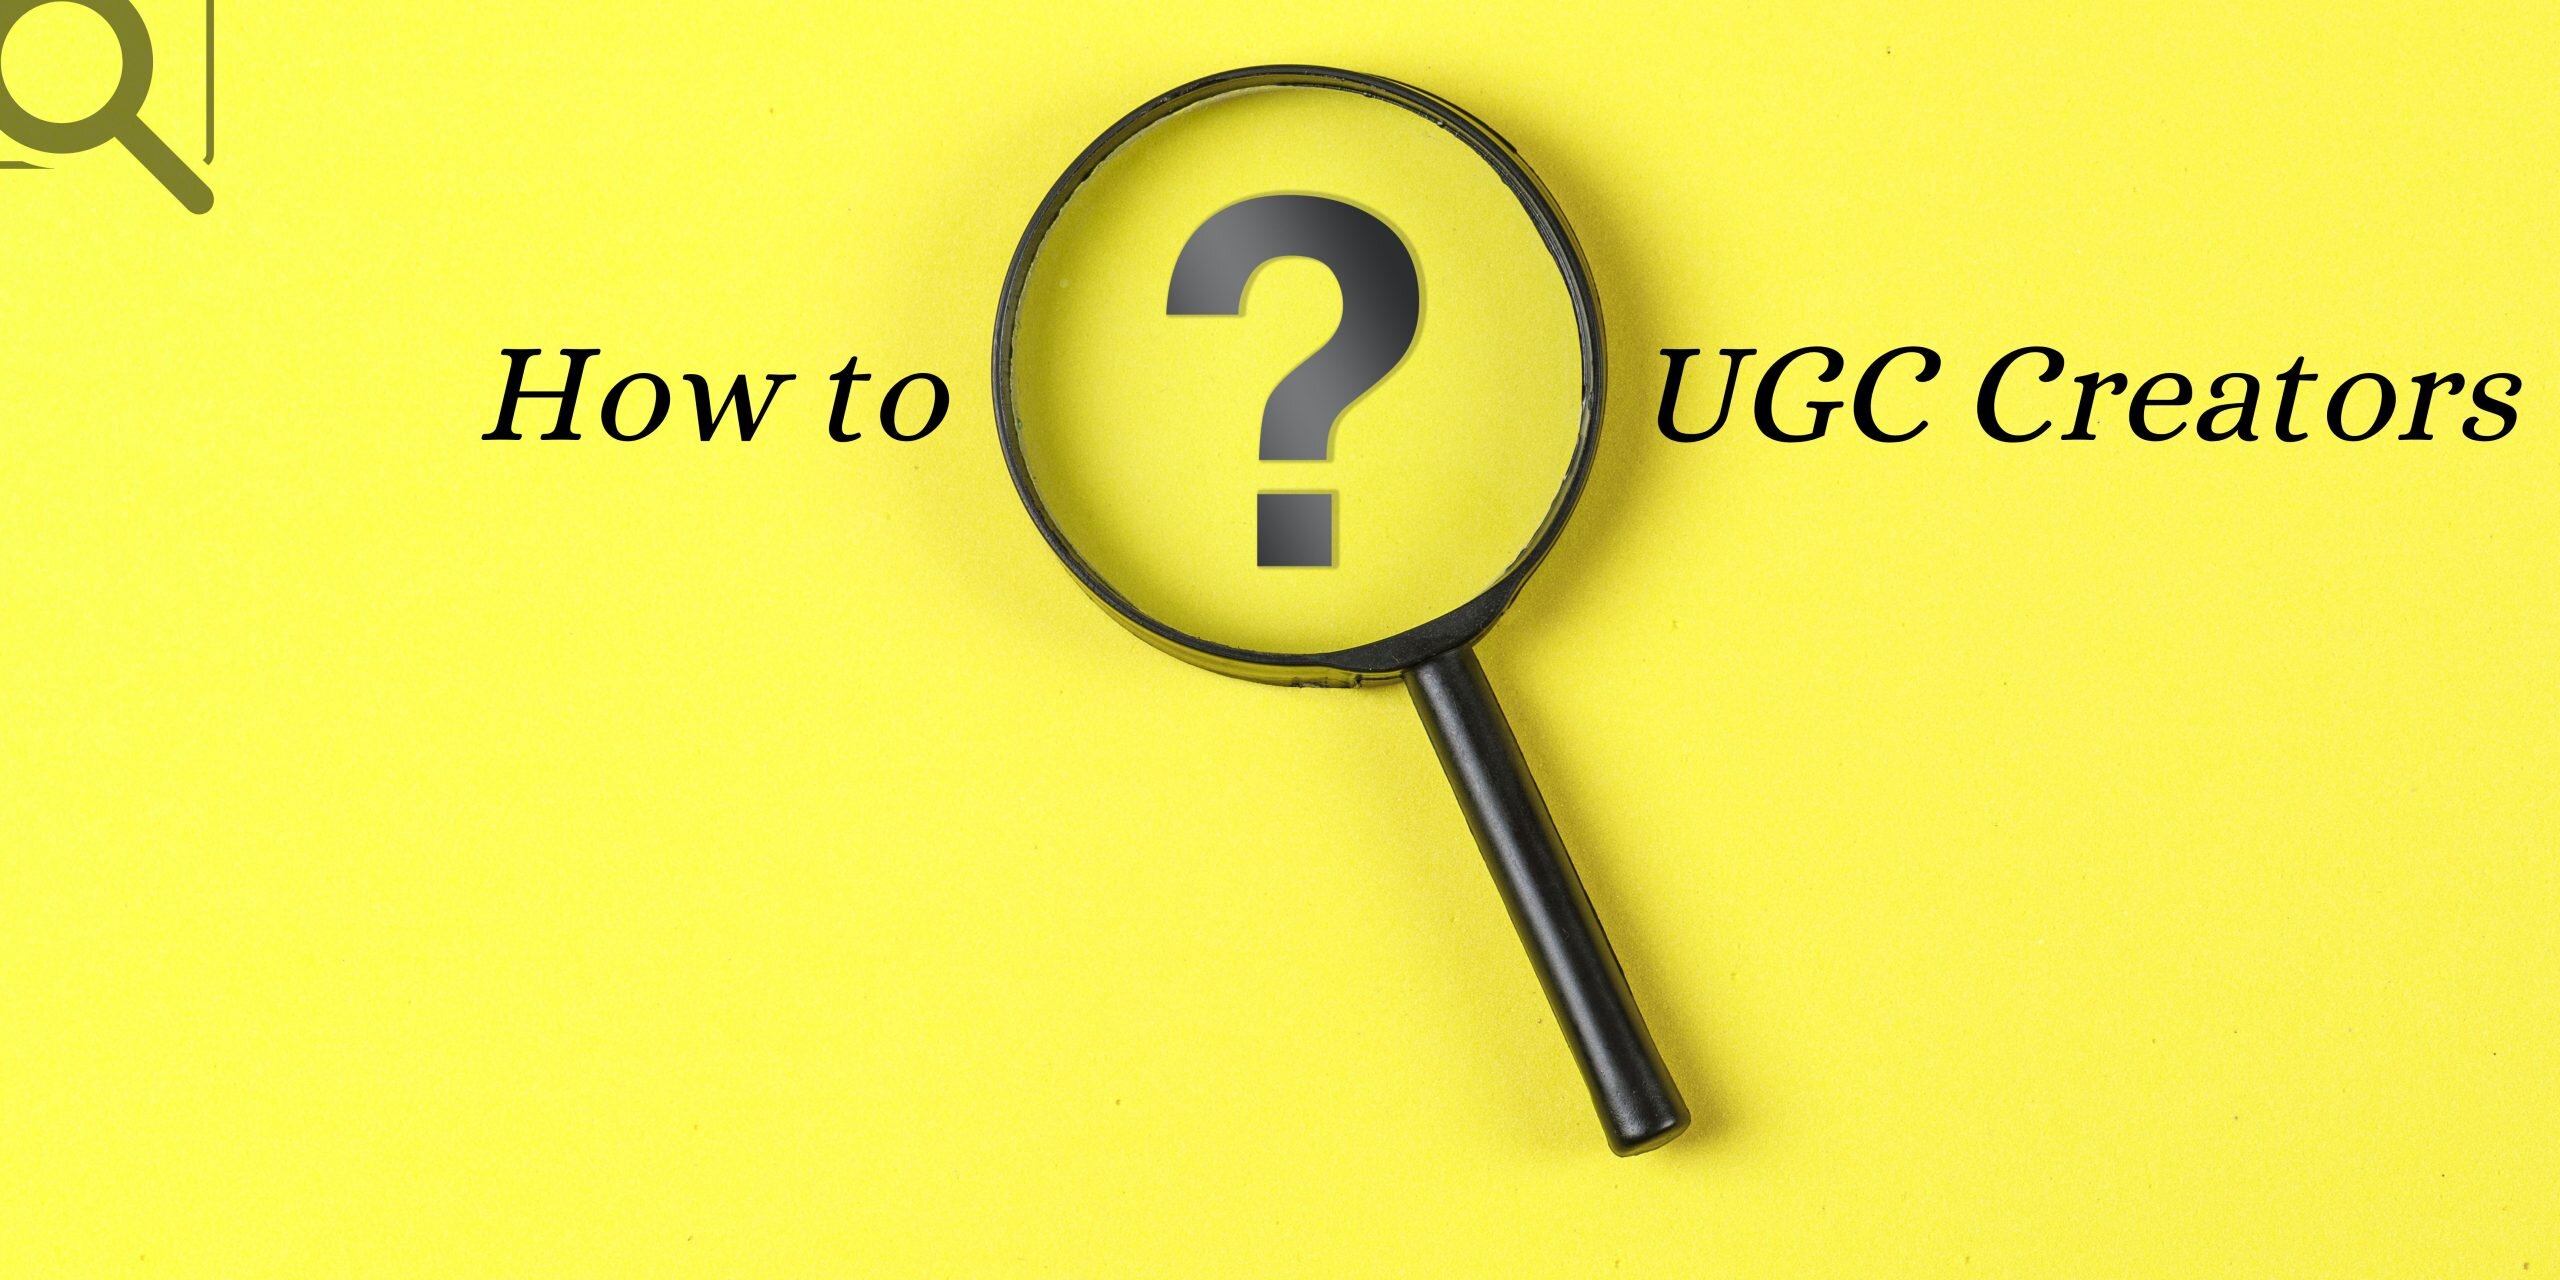 How to Find UGC Creators